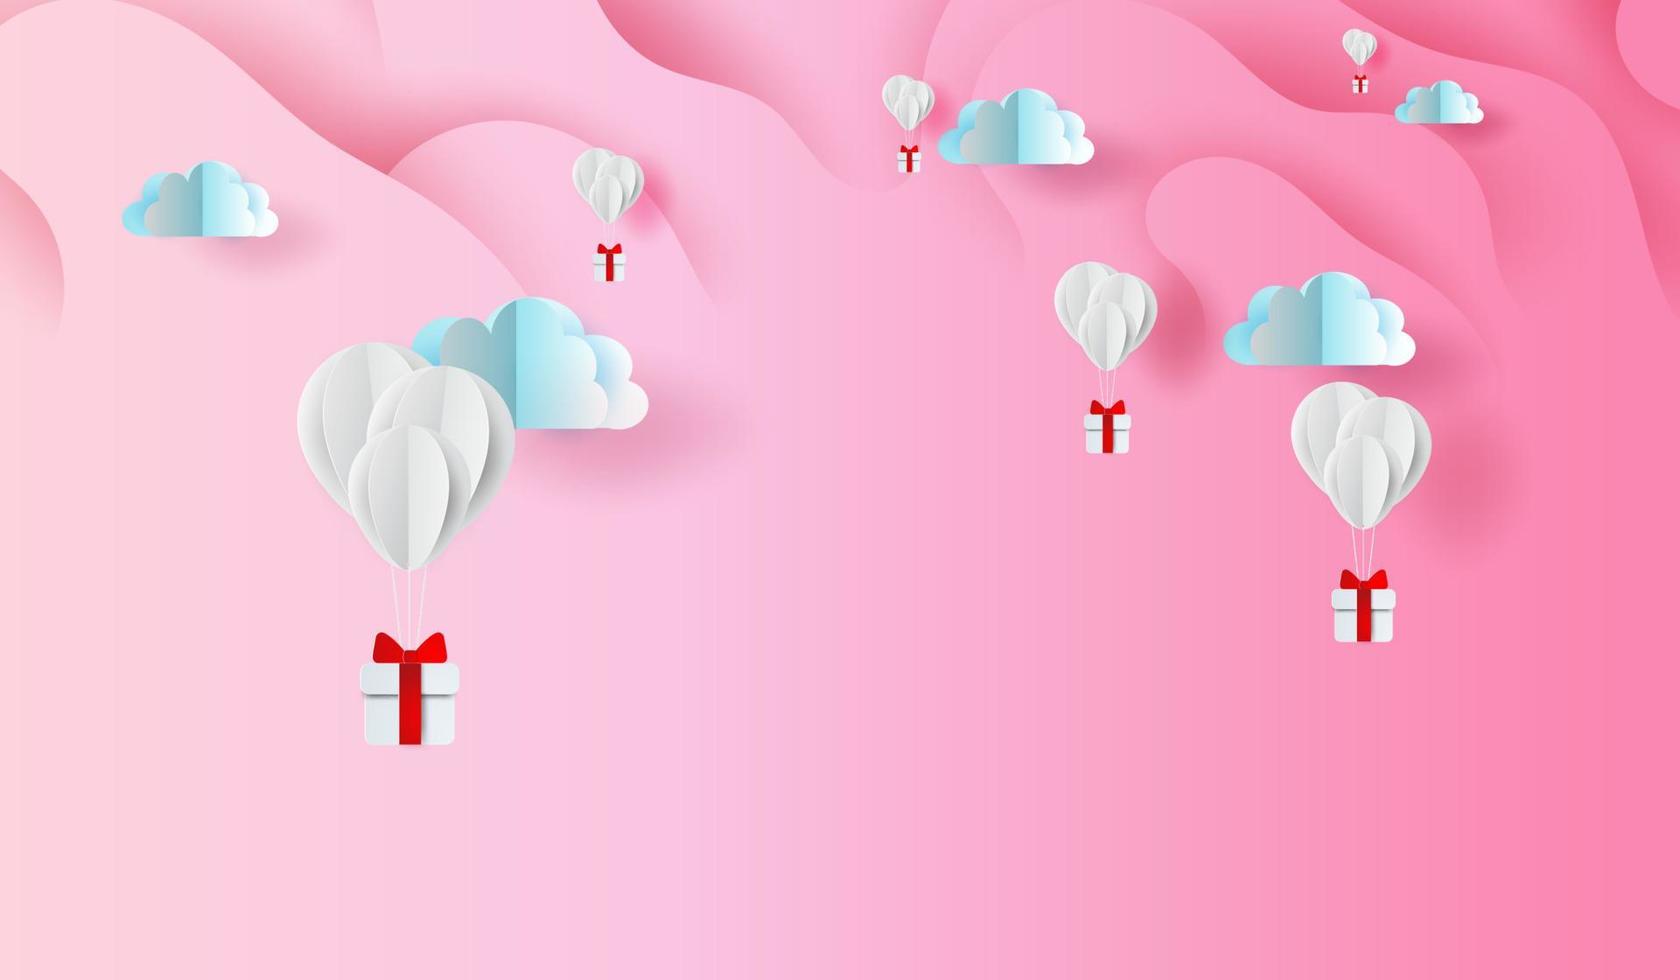 Arte de papel 3d y diseño artesanal de regalo de globos en forma de curva abstracta fondo de cielo rosa, flotando con caja de regalo en las nubes de aire.concepto de día de san valentín.vector de fondo de elementos para tarjeta de felicitación vector